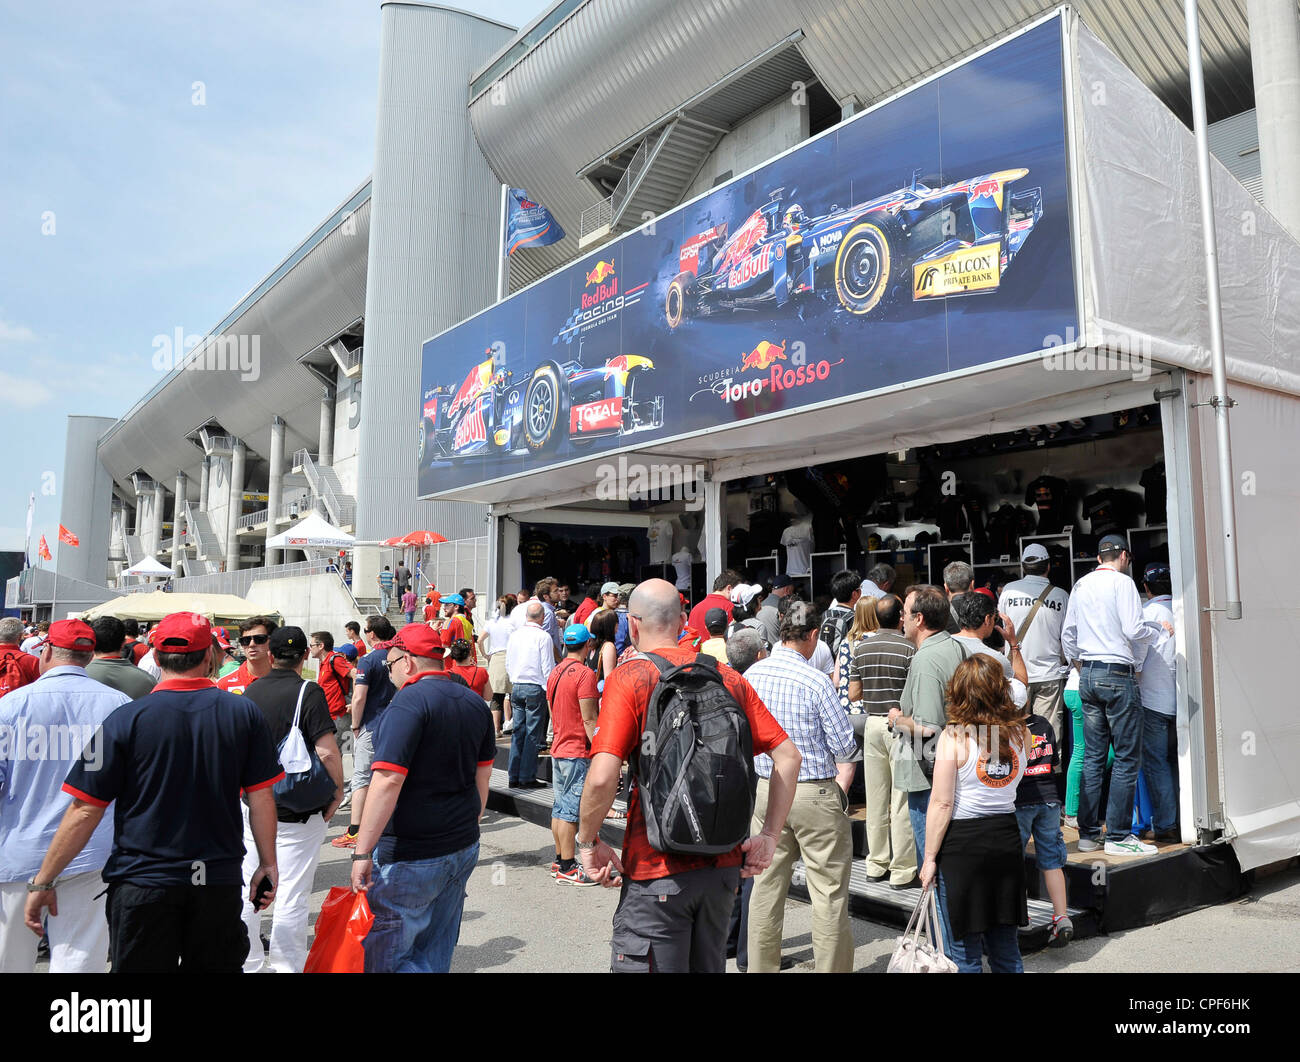 offizielle Red Bull Formel 1 Merchandise verkauft Stand, während der Formel 1 Grand Prix von Spanien auf dem Circuit de Catalunya in Stockfoto